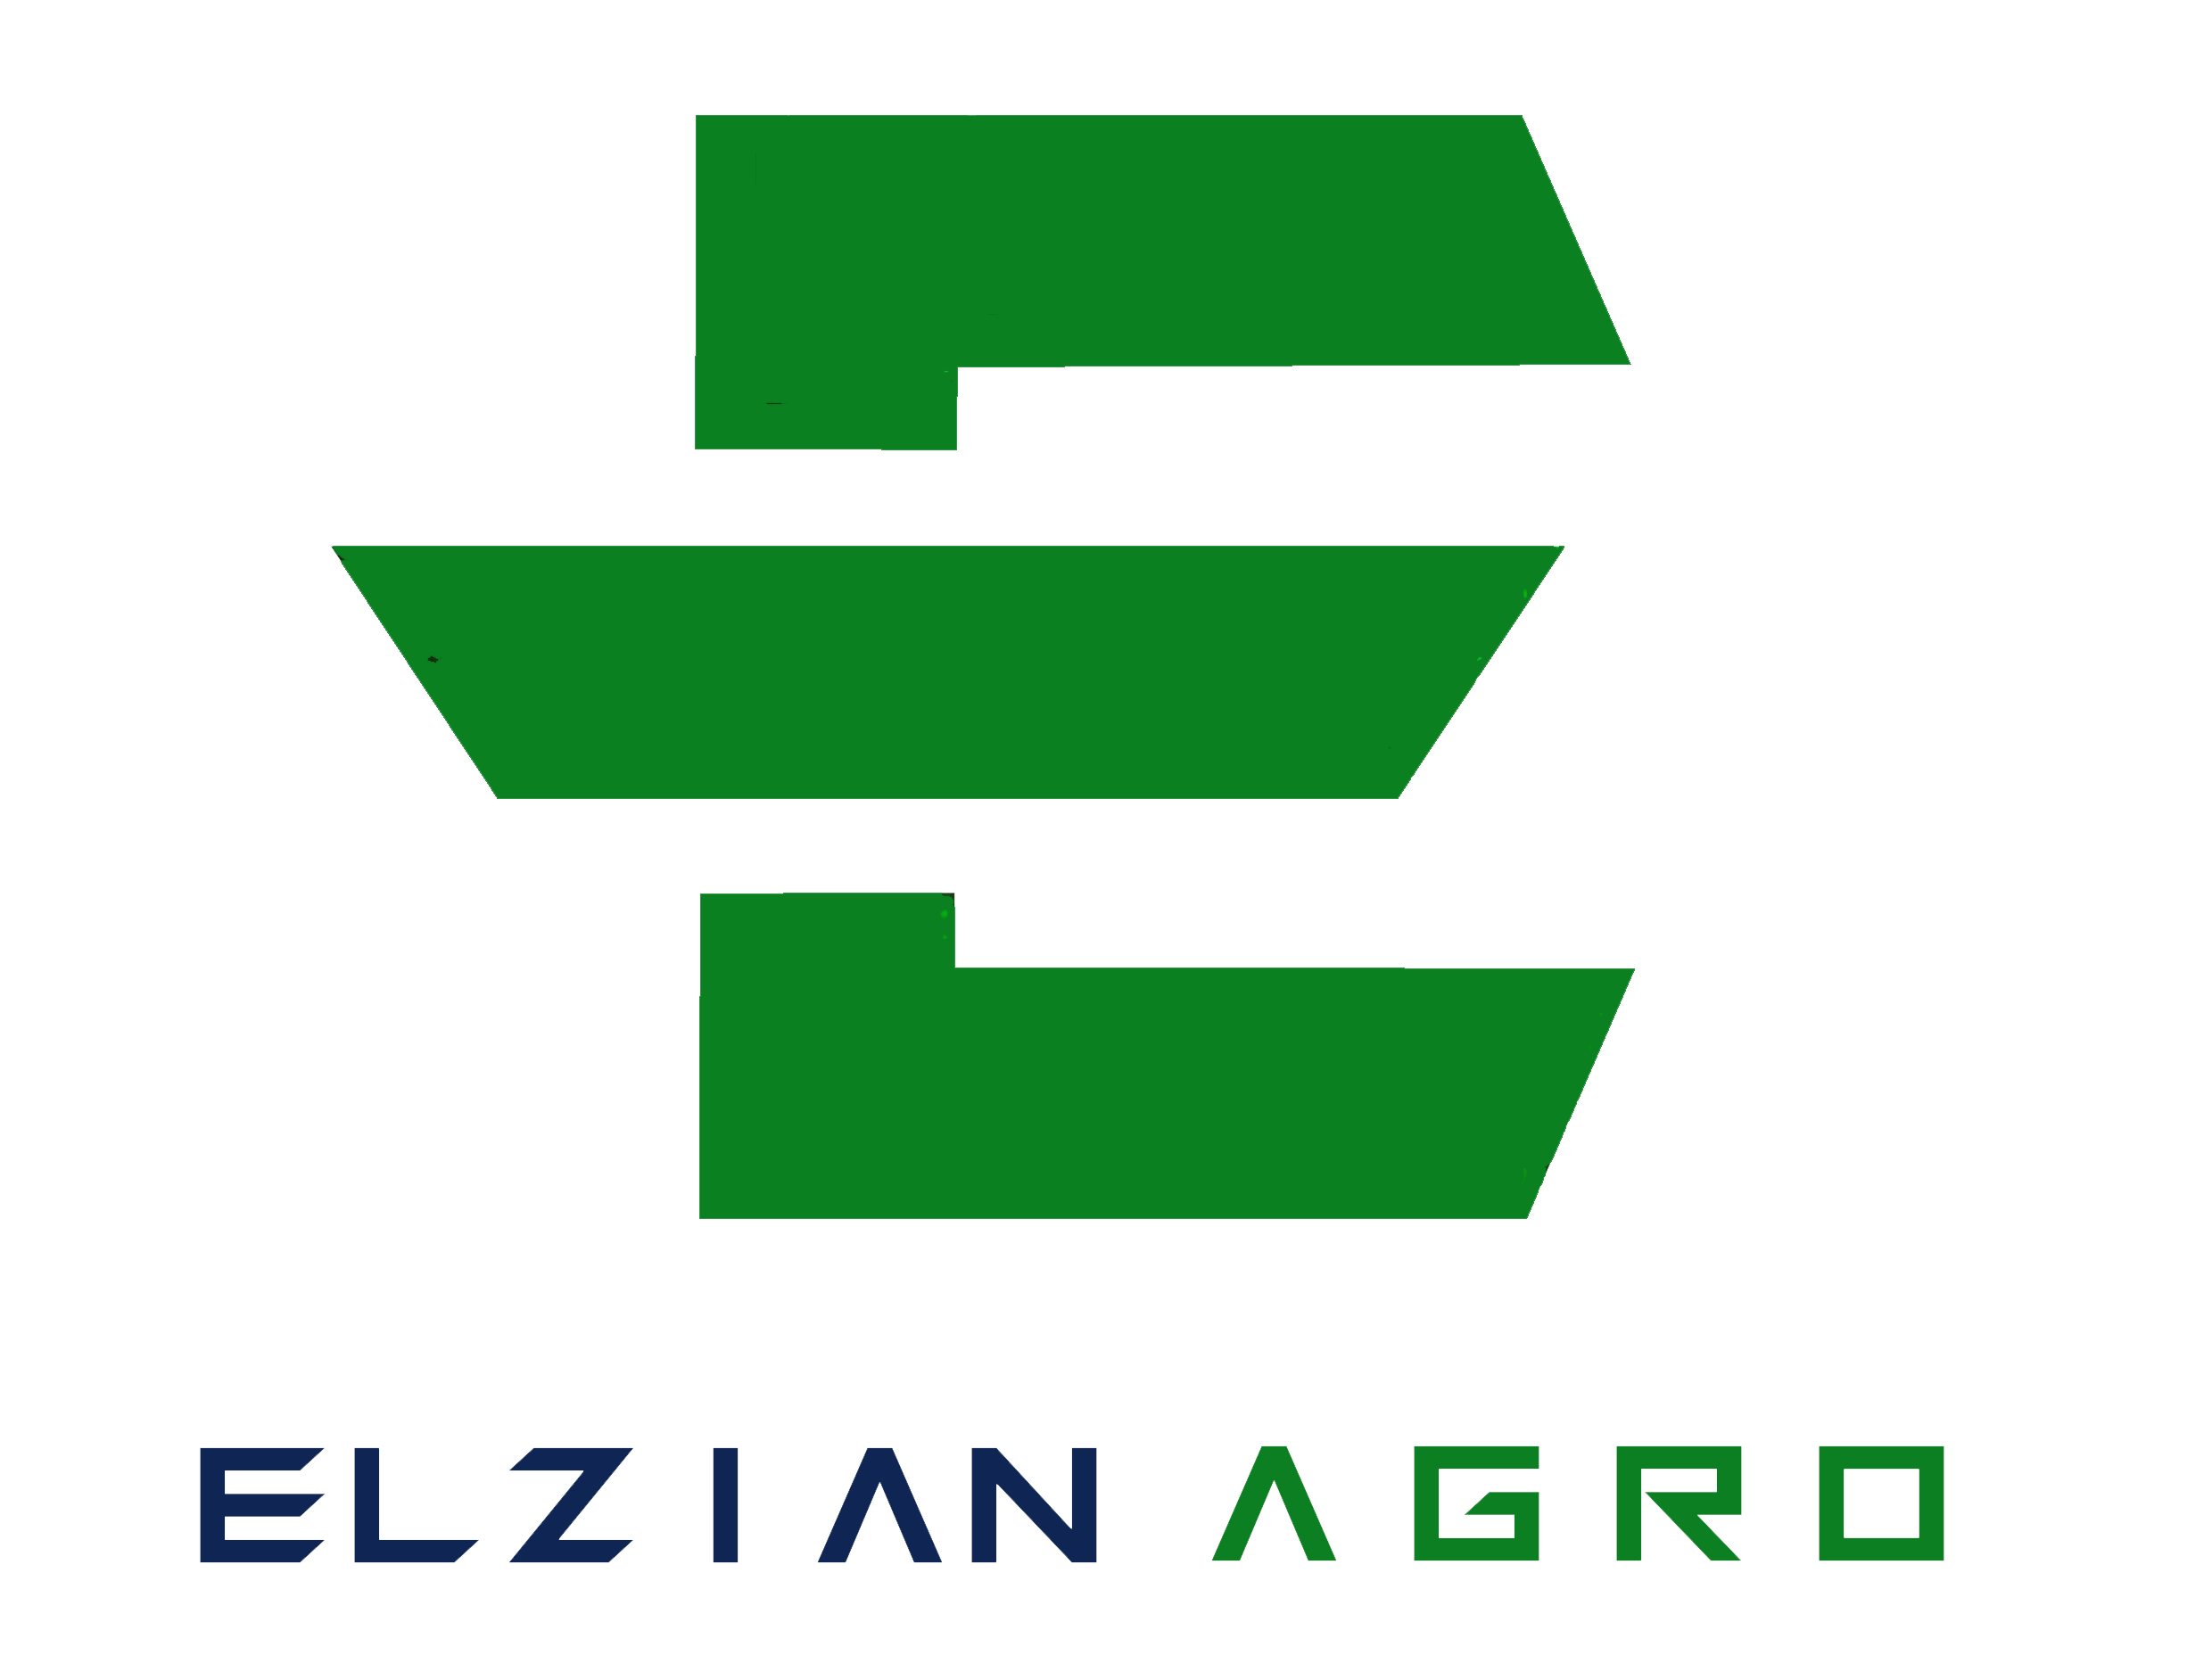 Large logo